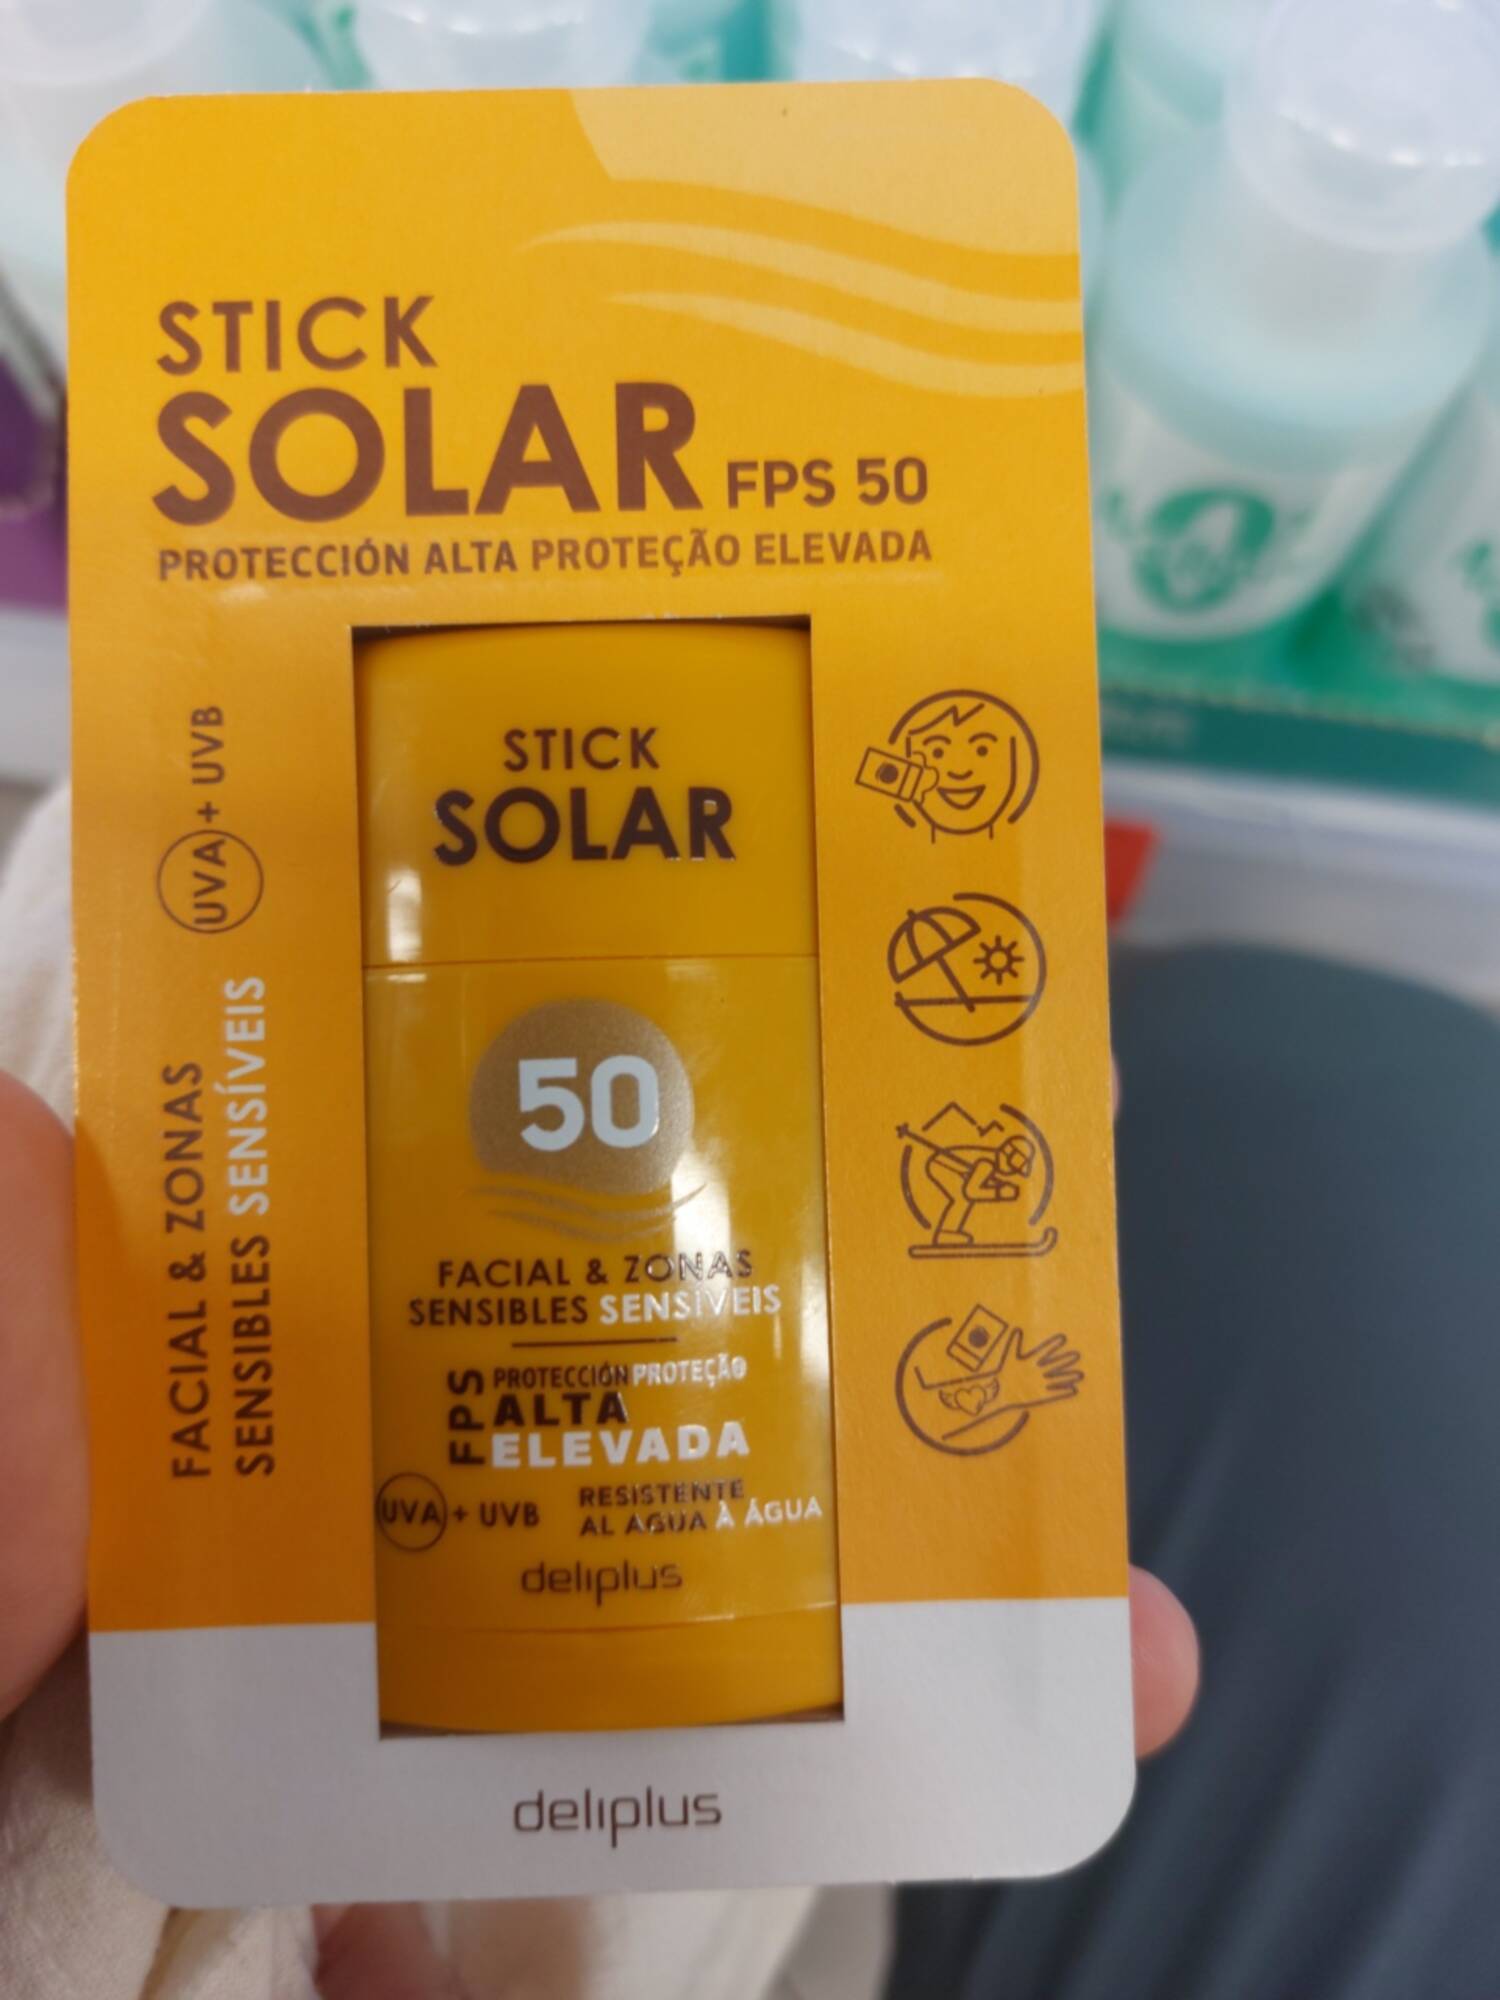 DELIPLUS - Stick solar fps 50